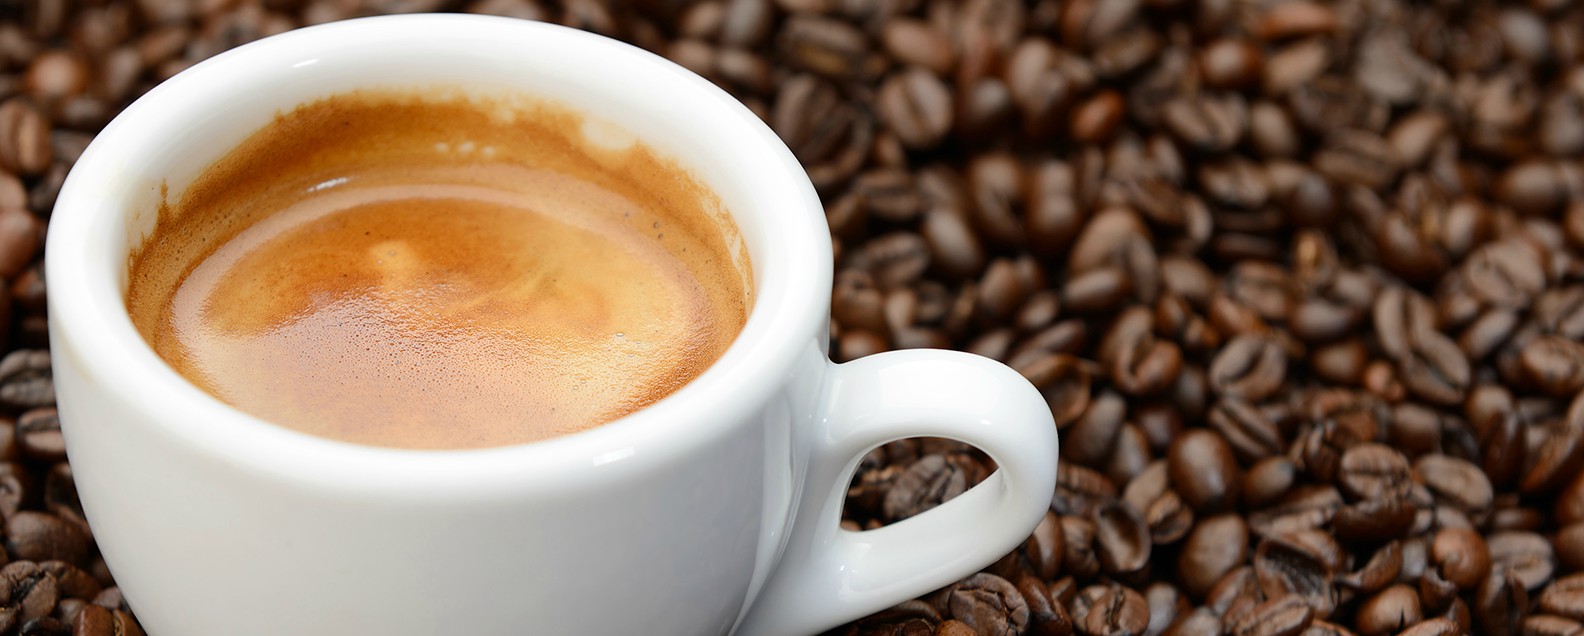 全球10大咖啡饮品